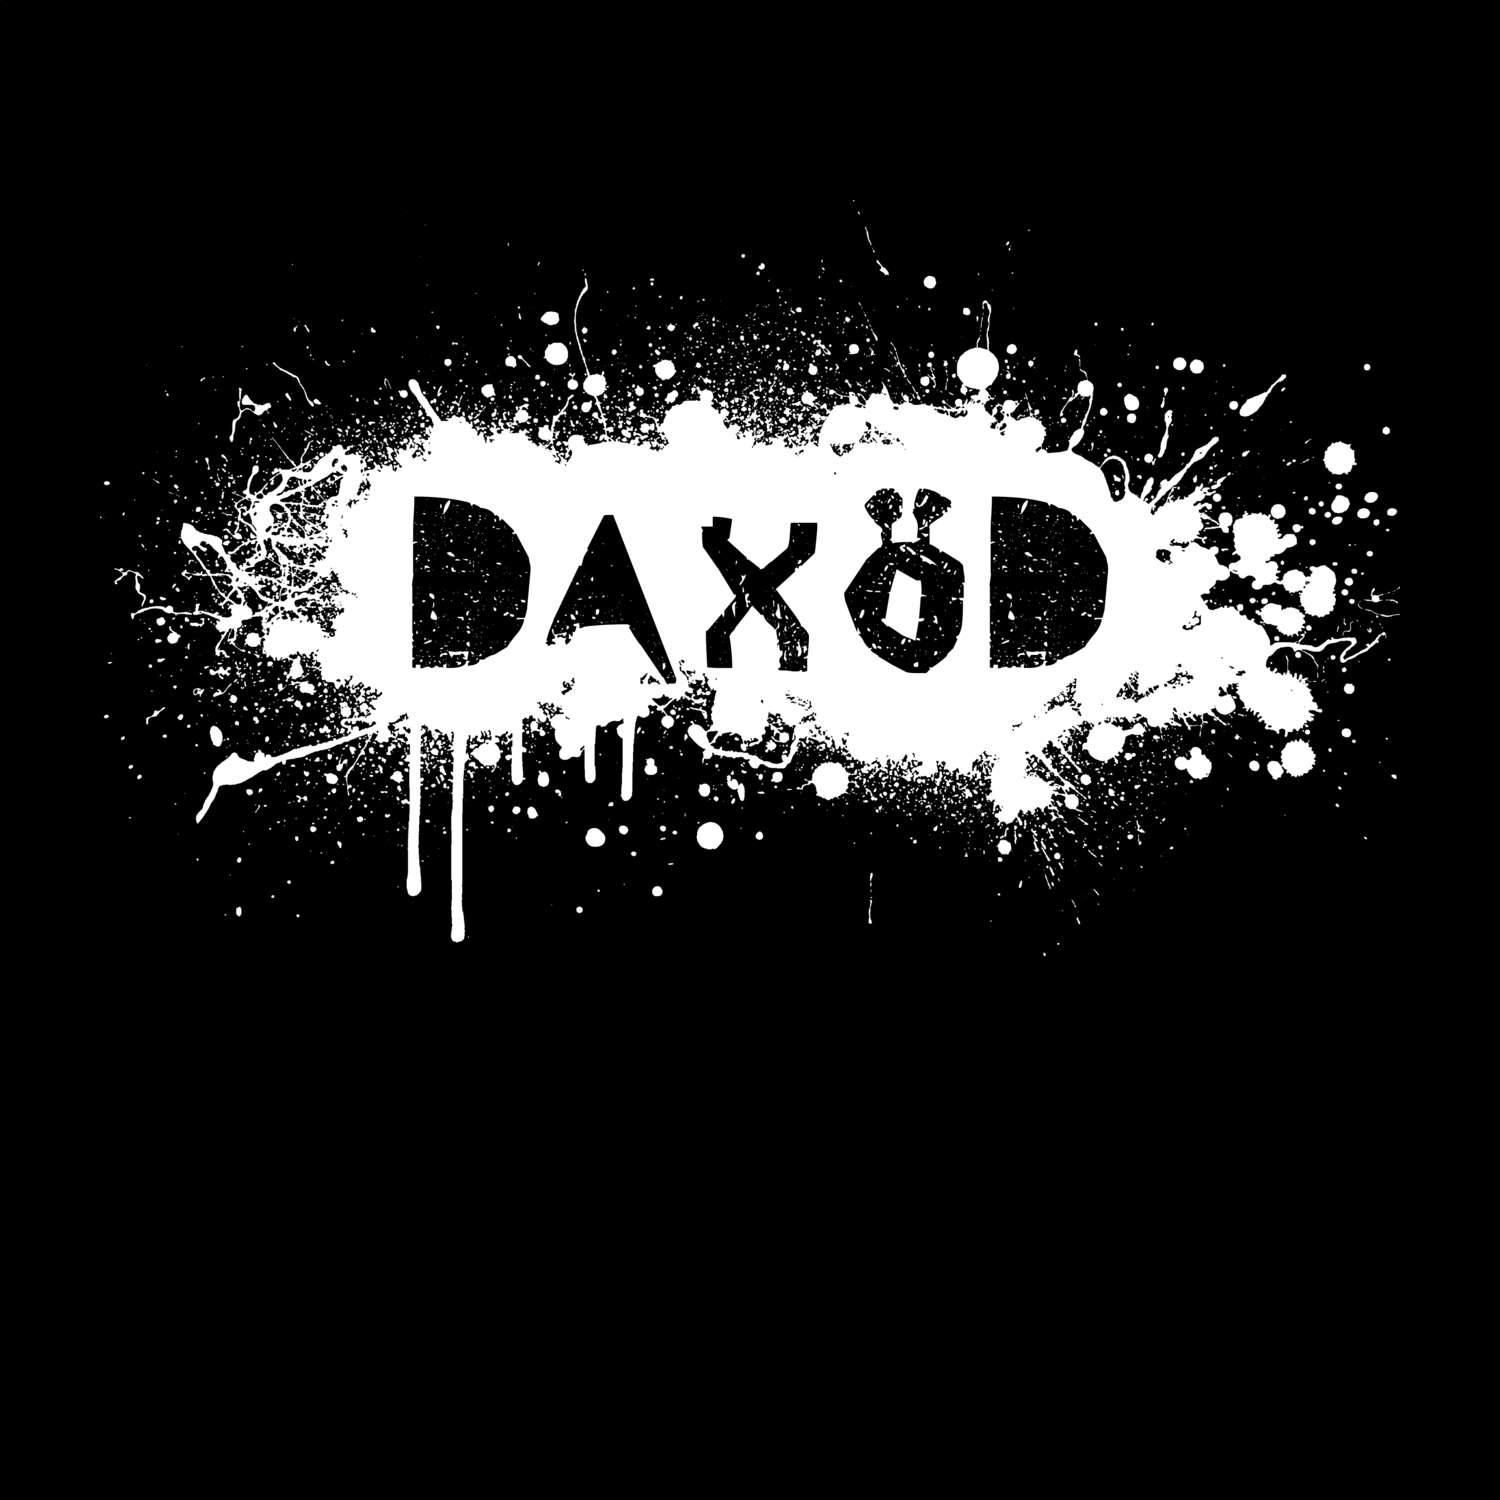 Daxöd T-Shirt »Paint Splash Punk«